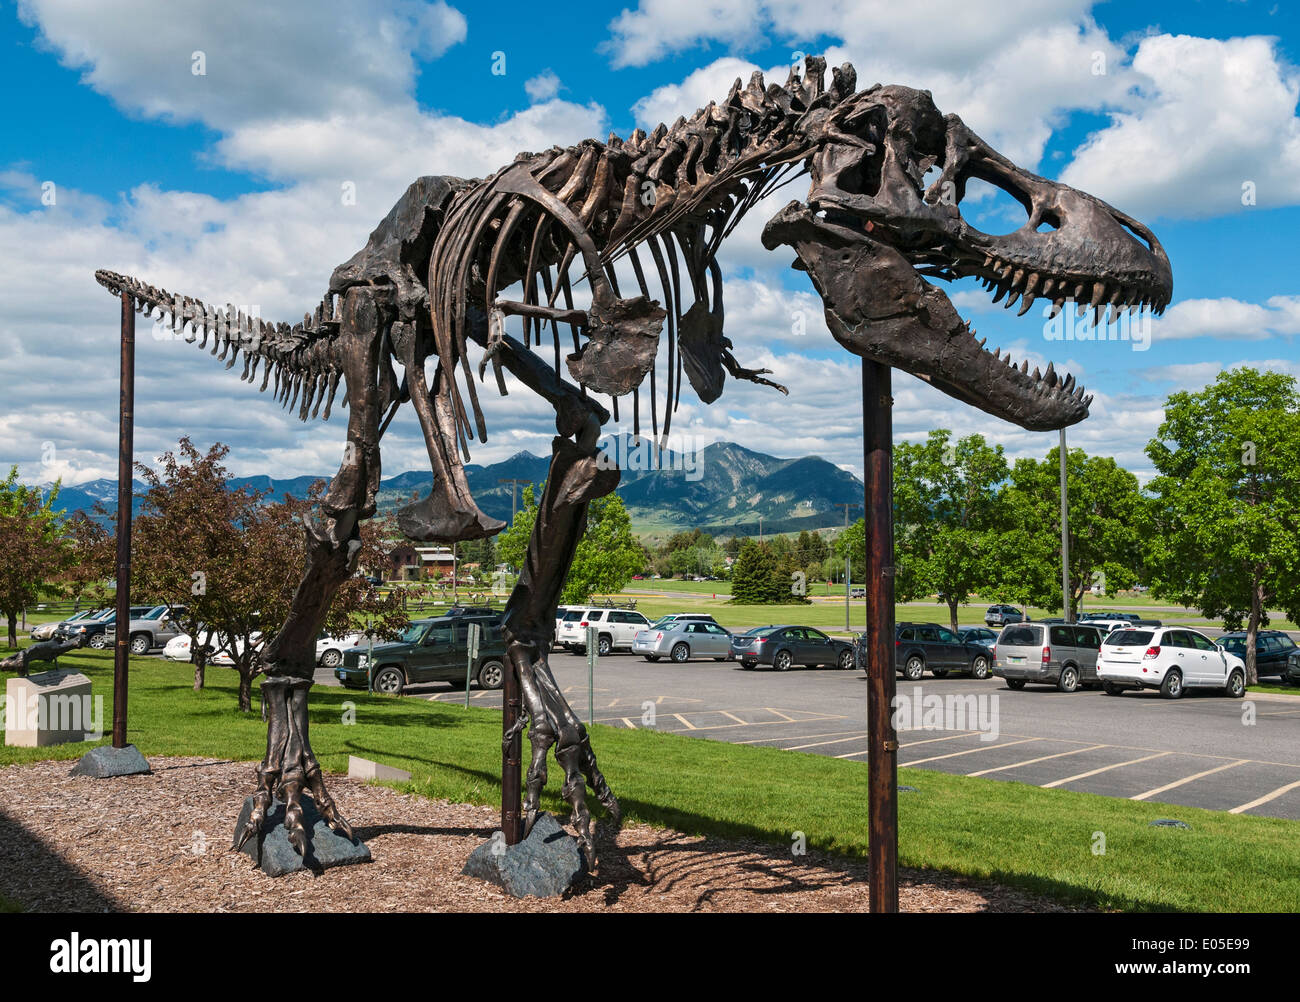 Montana, Bozeman, Museum of the Rockies, Dinosaur Exhibit Stock Photo